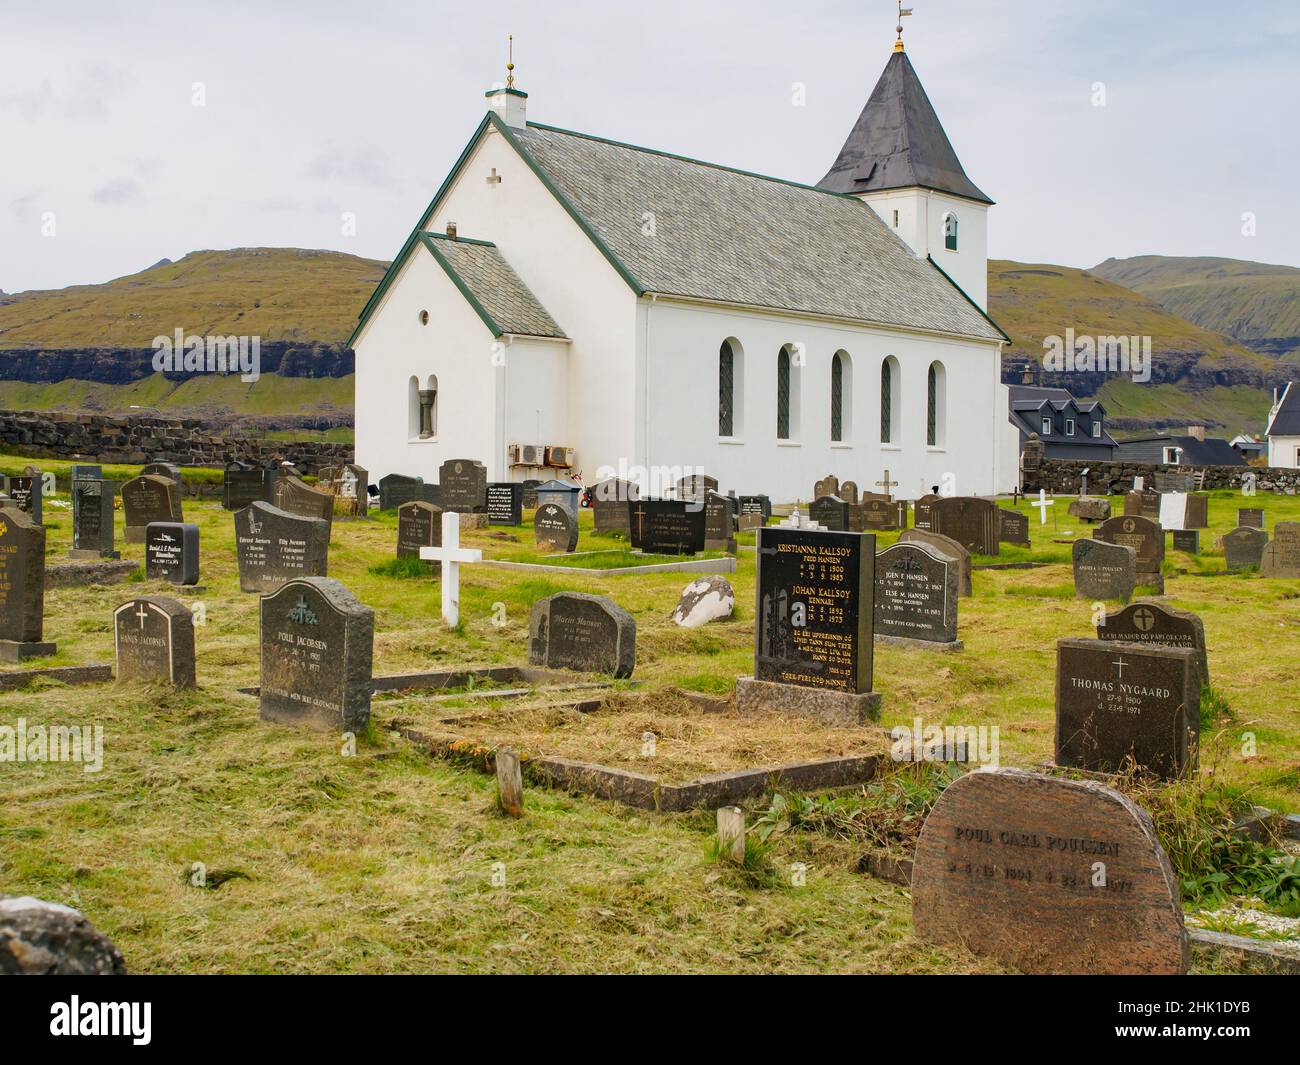 Eiði, Ejde, (Oat), Faroe Islands - Sep, 2020: Small church (Eiðis kirkja) and cemetery in the village on Island Eysturoy,  Denmark Stock Photo